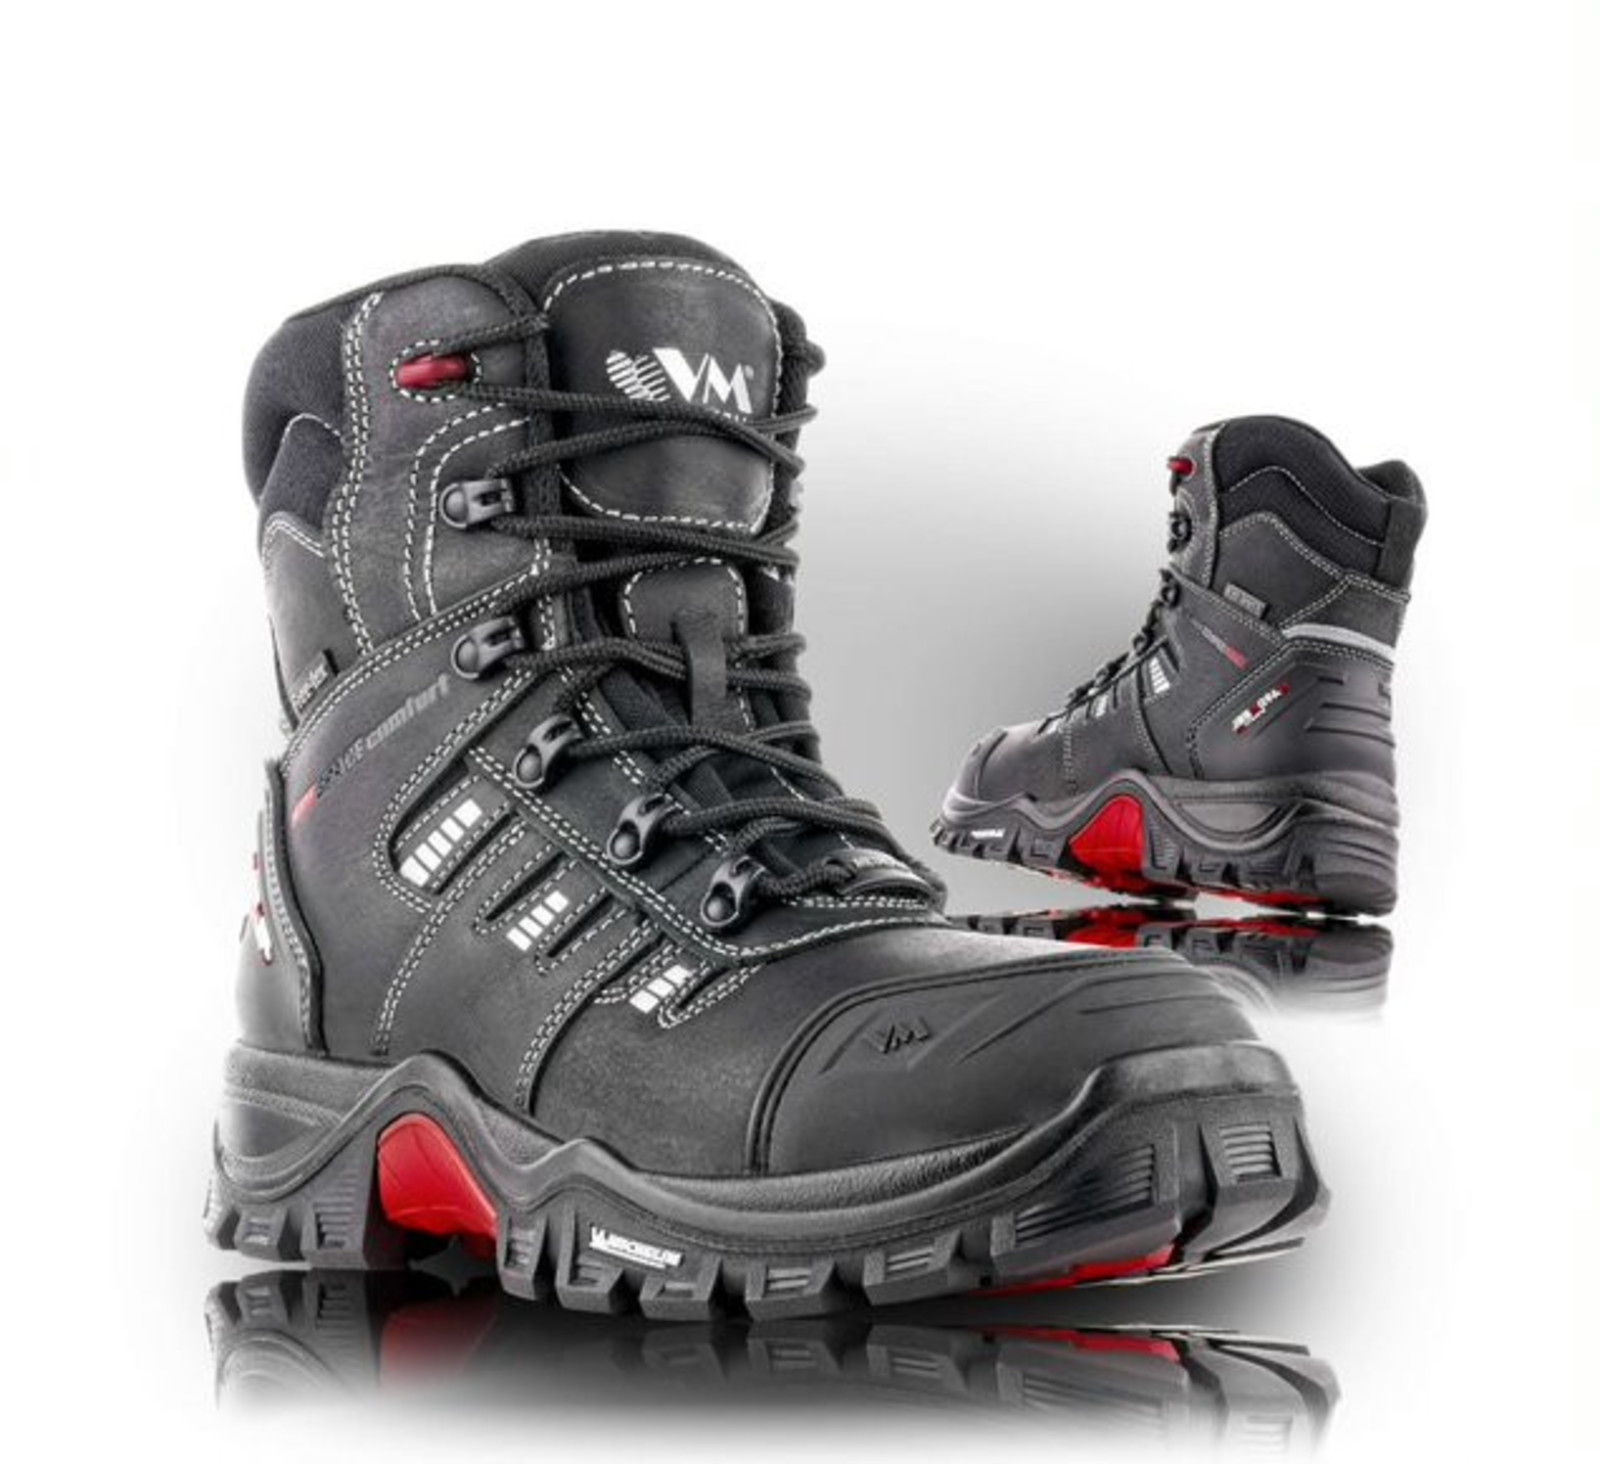 Bezpečnostná obuv Michelin® Portland S3 s membránou - veľkosť: 43, farba: čierna/červená